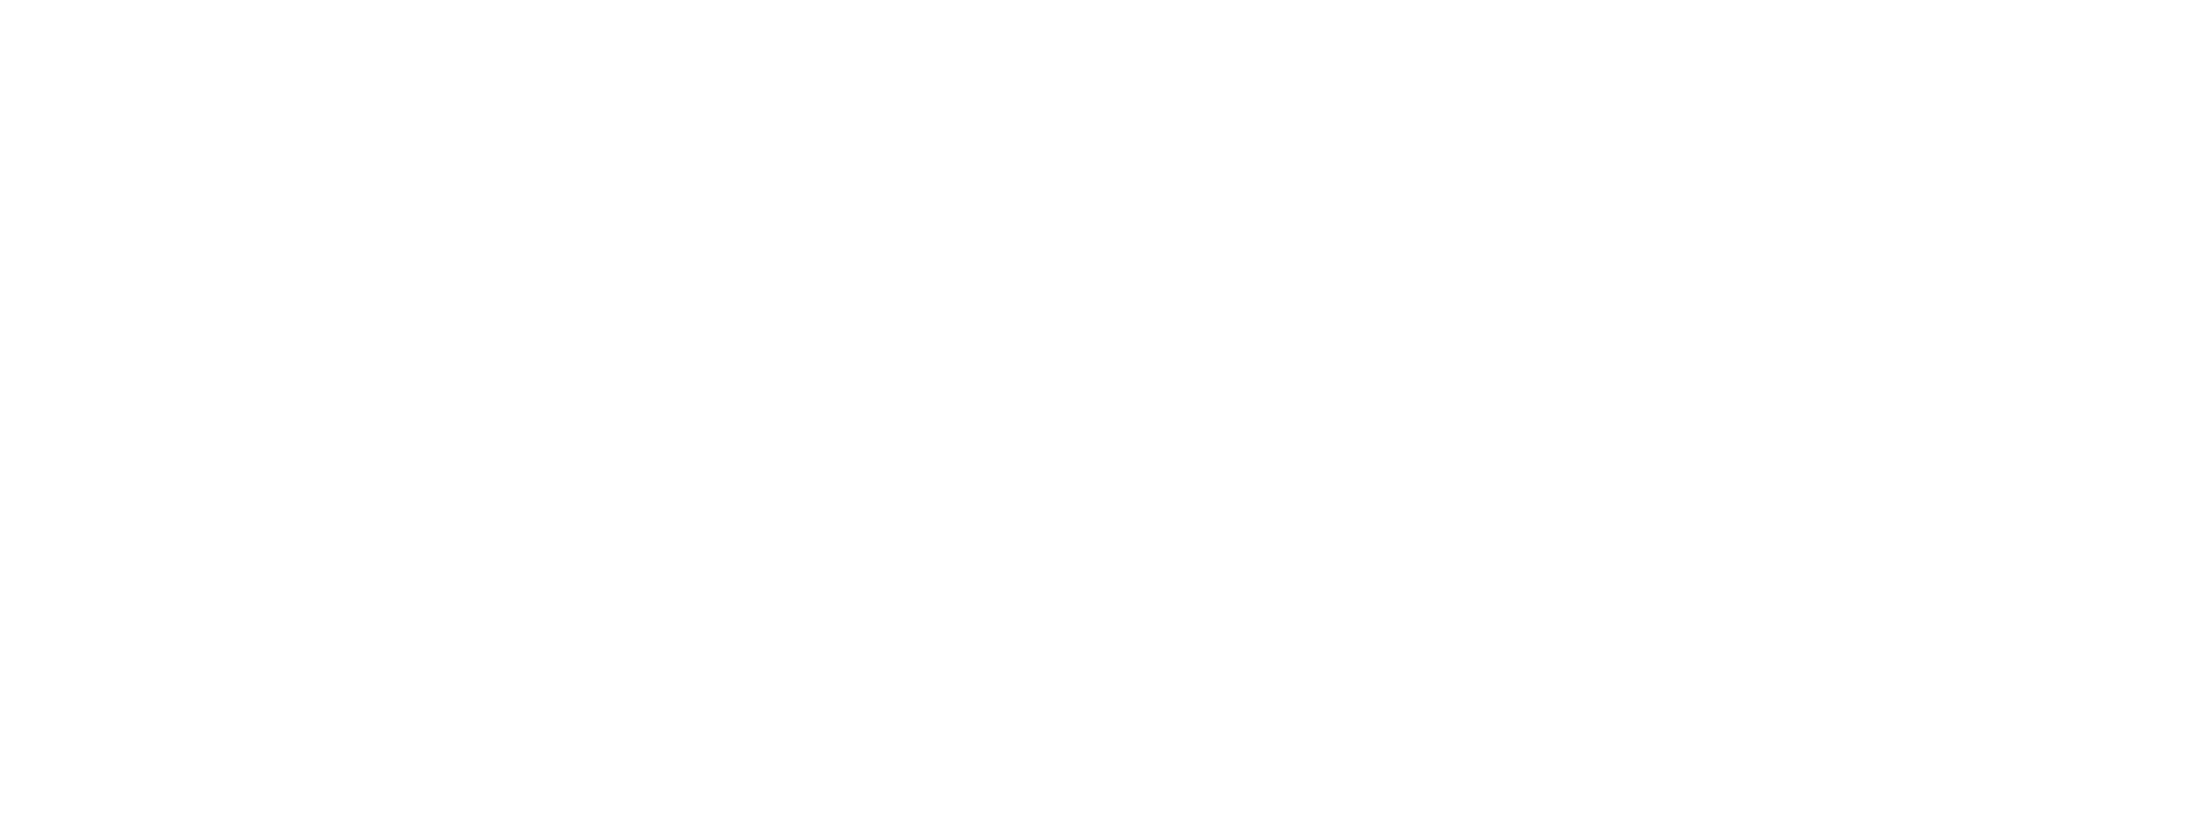 AMD EPYC logo